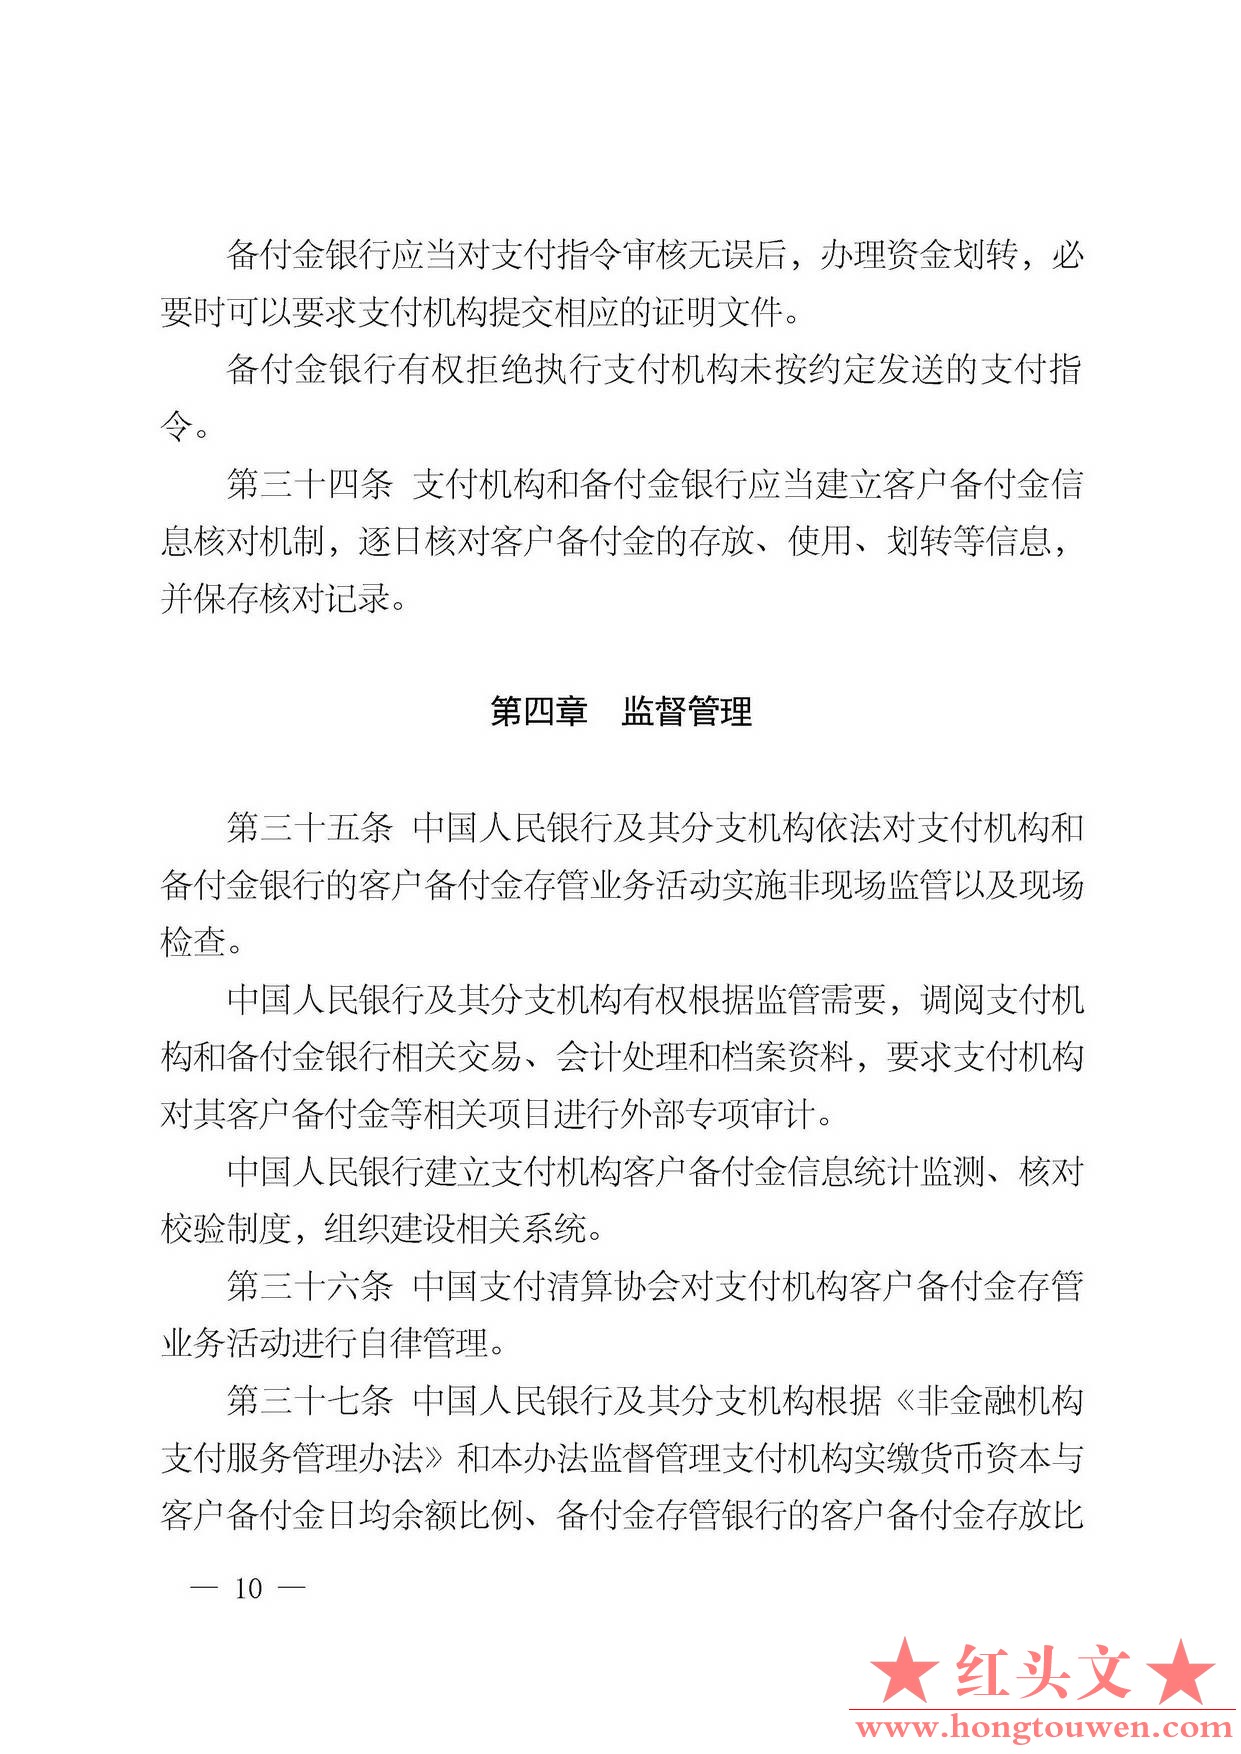 中国人民银行公告[2013]6号-《支付机构客户备付金存管办法》_页面_10.jpg.jpg